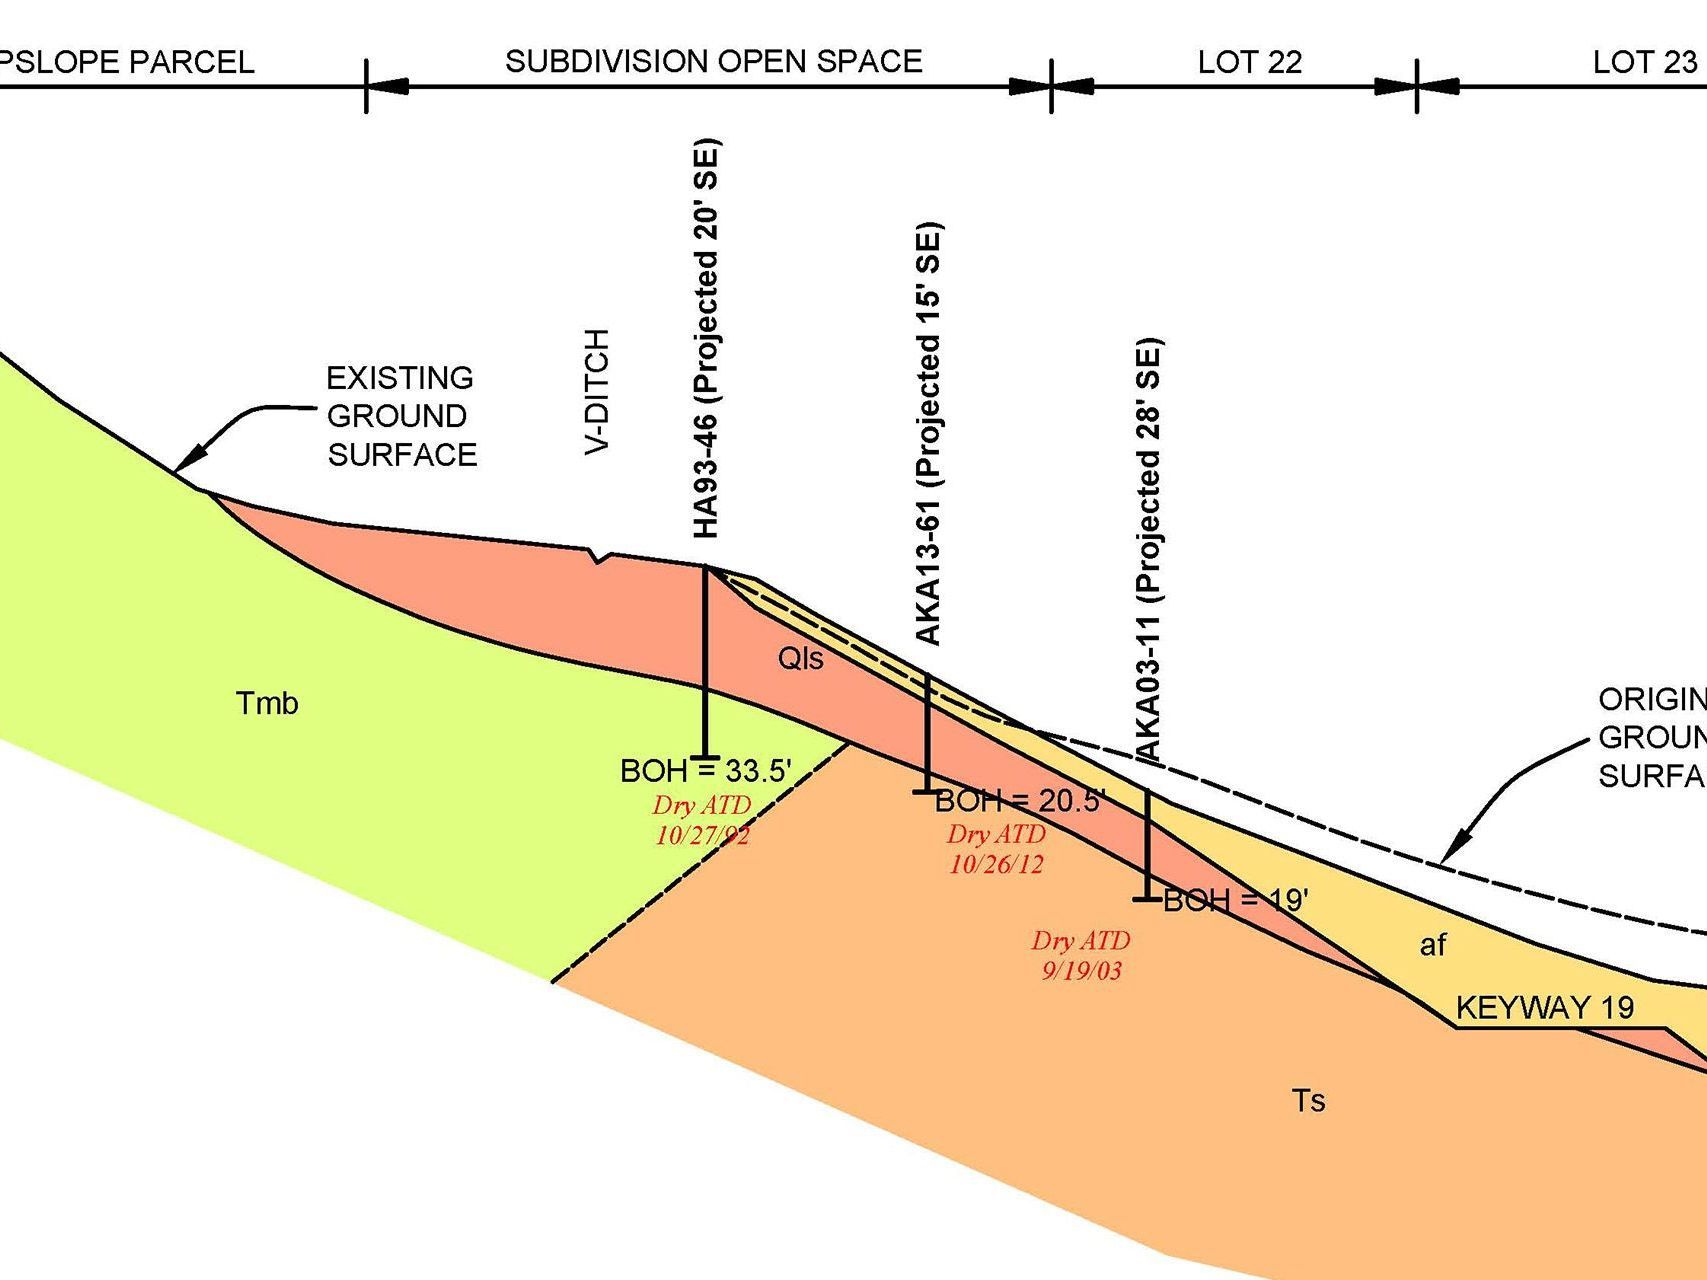 Ground Surface Analysis